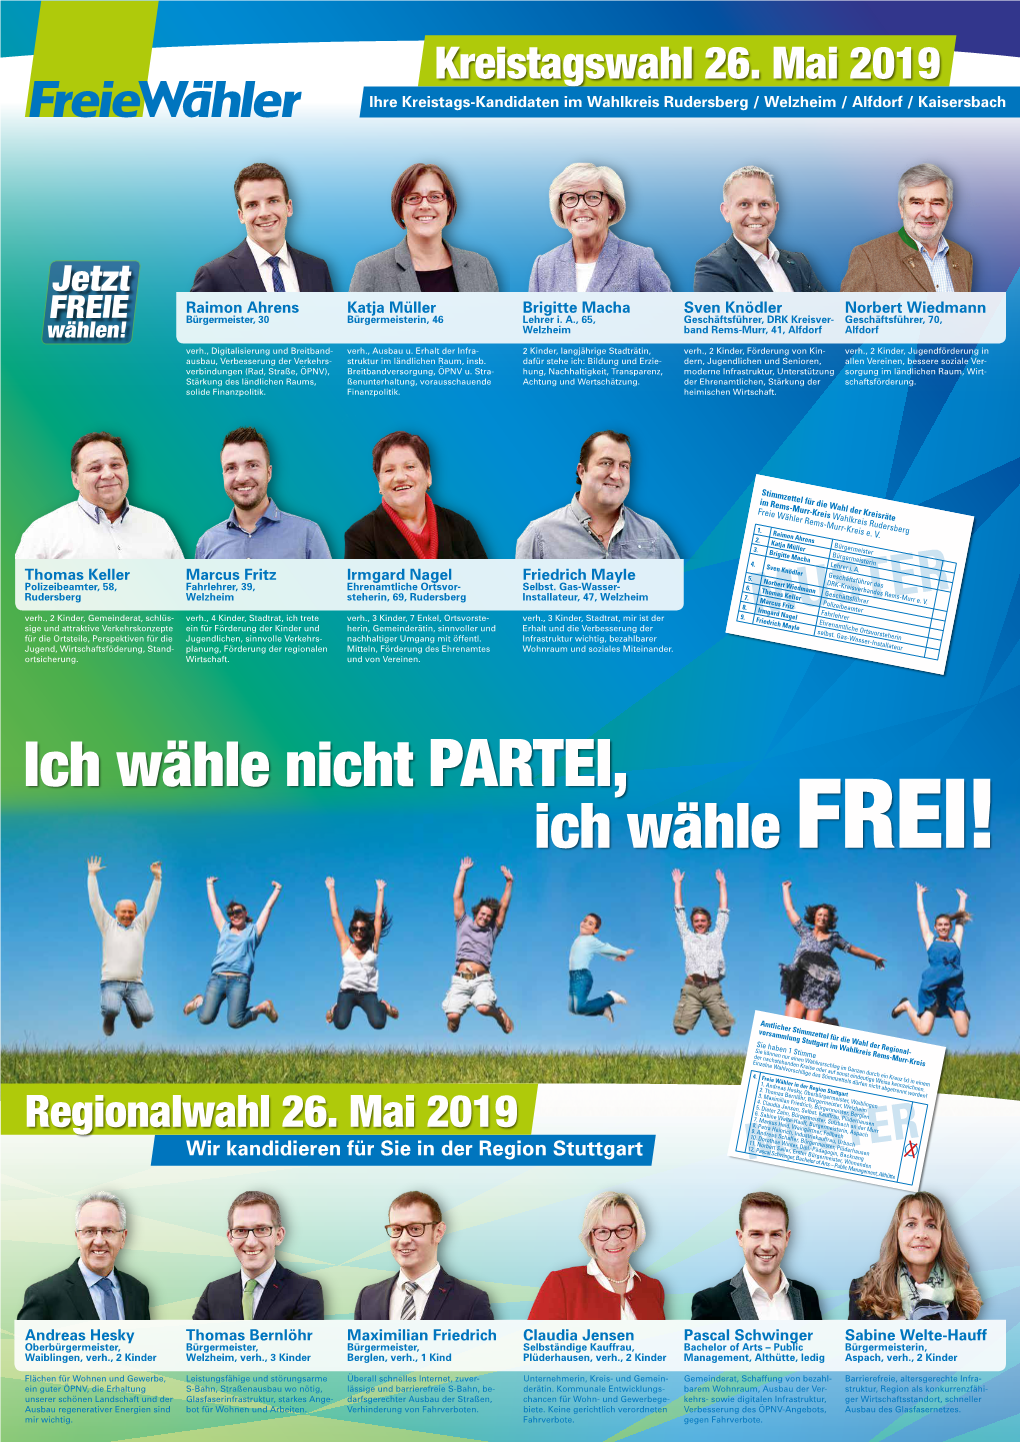 Kreistagswahl 26. Mai 2019 Ihre Kreistags-Kandidaten Im Wahlkreis Rudersberg / Welzheim / Alfdorf / Kaisersbach